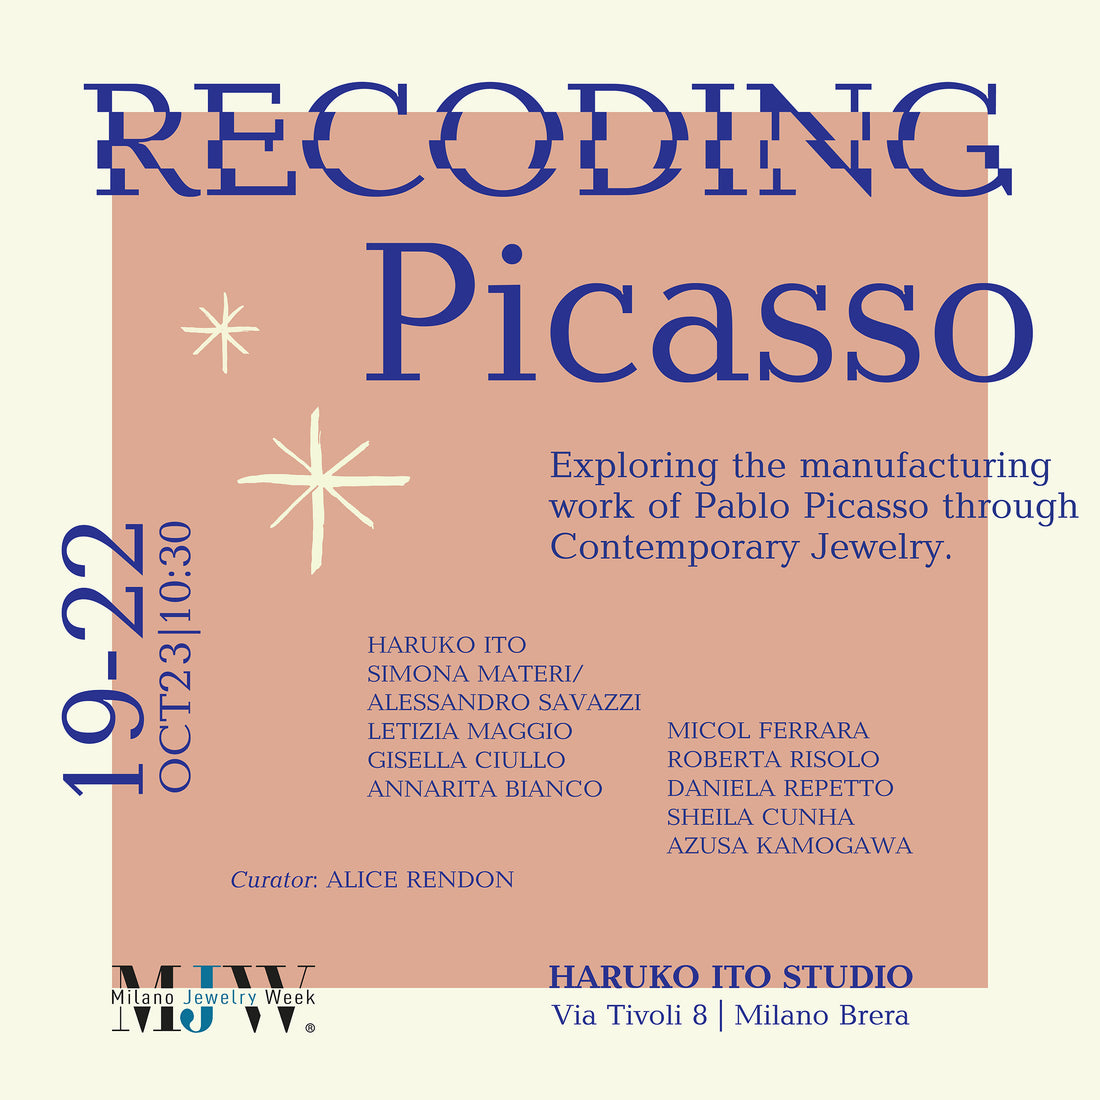 Partecipazione alla mostra "RECODING Picasso" Milano